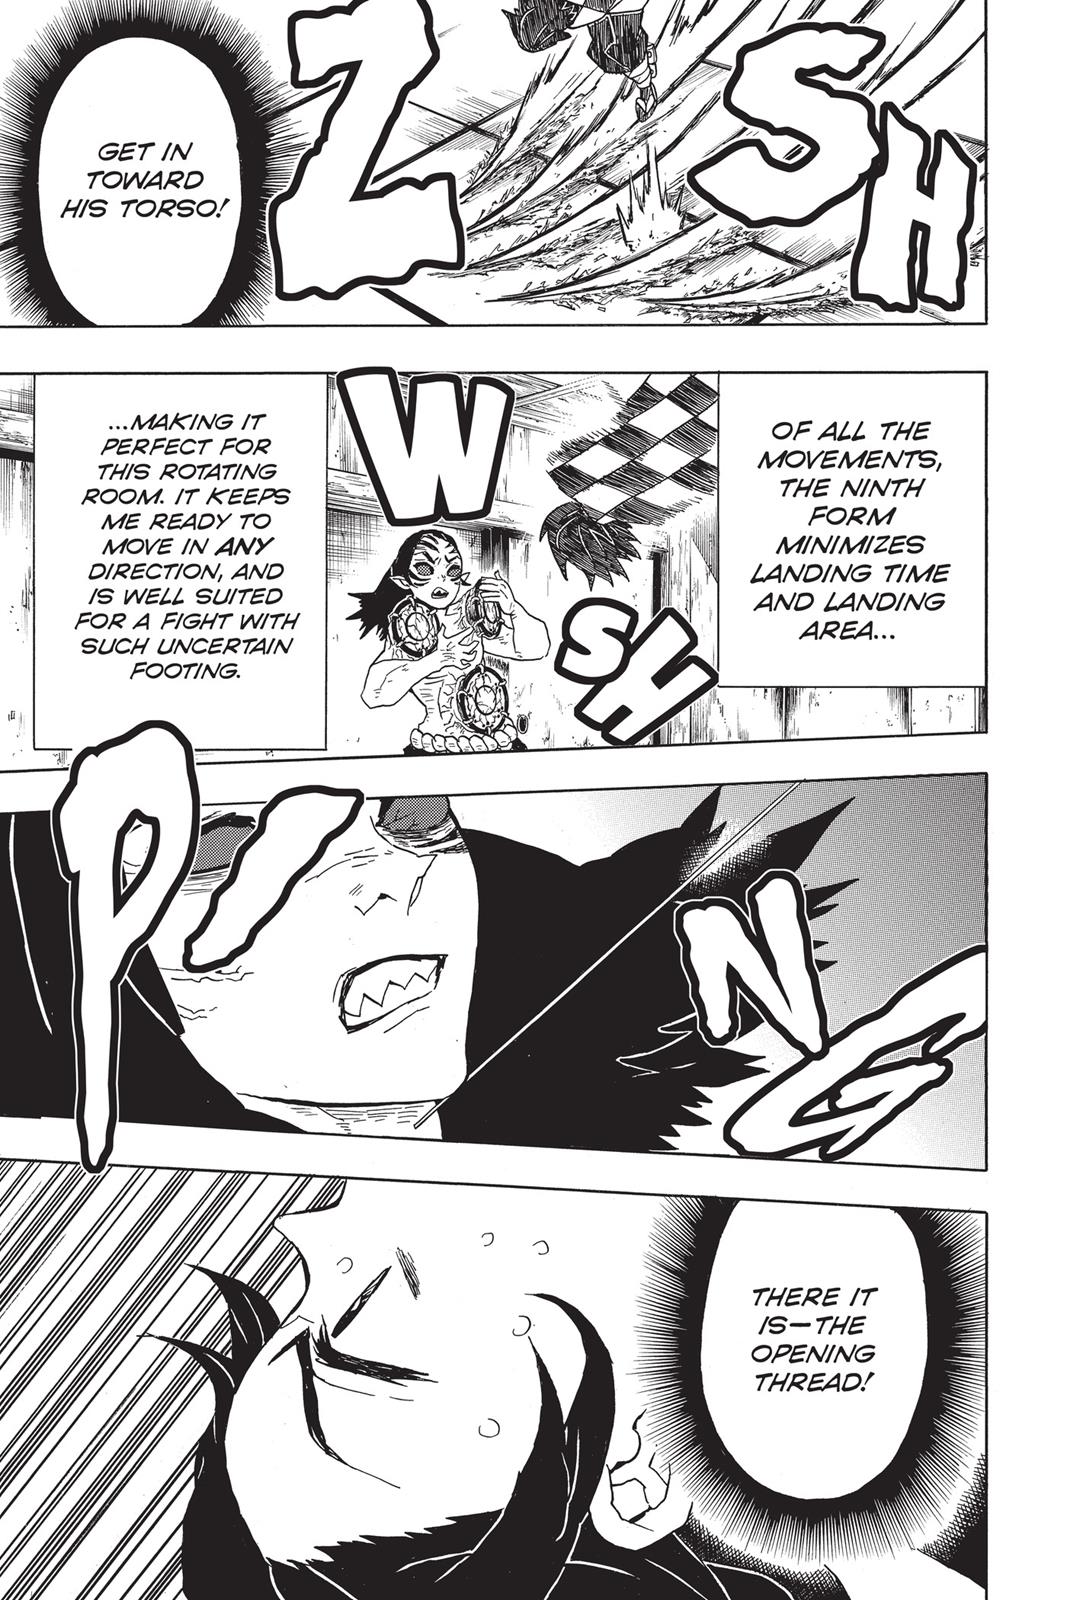 Demon Slayer Manga Manga Chapter - 25 - image 5